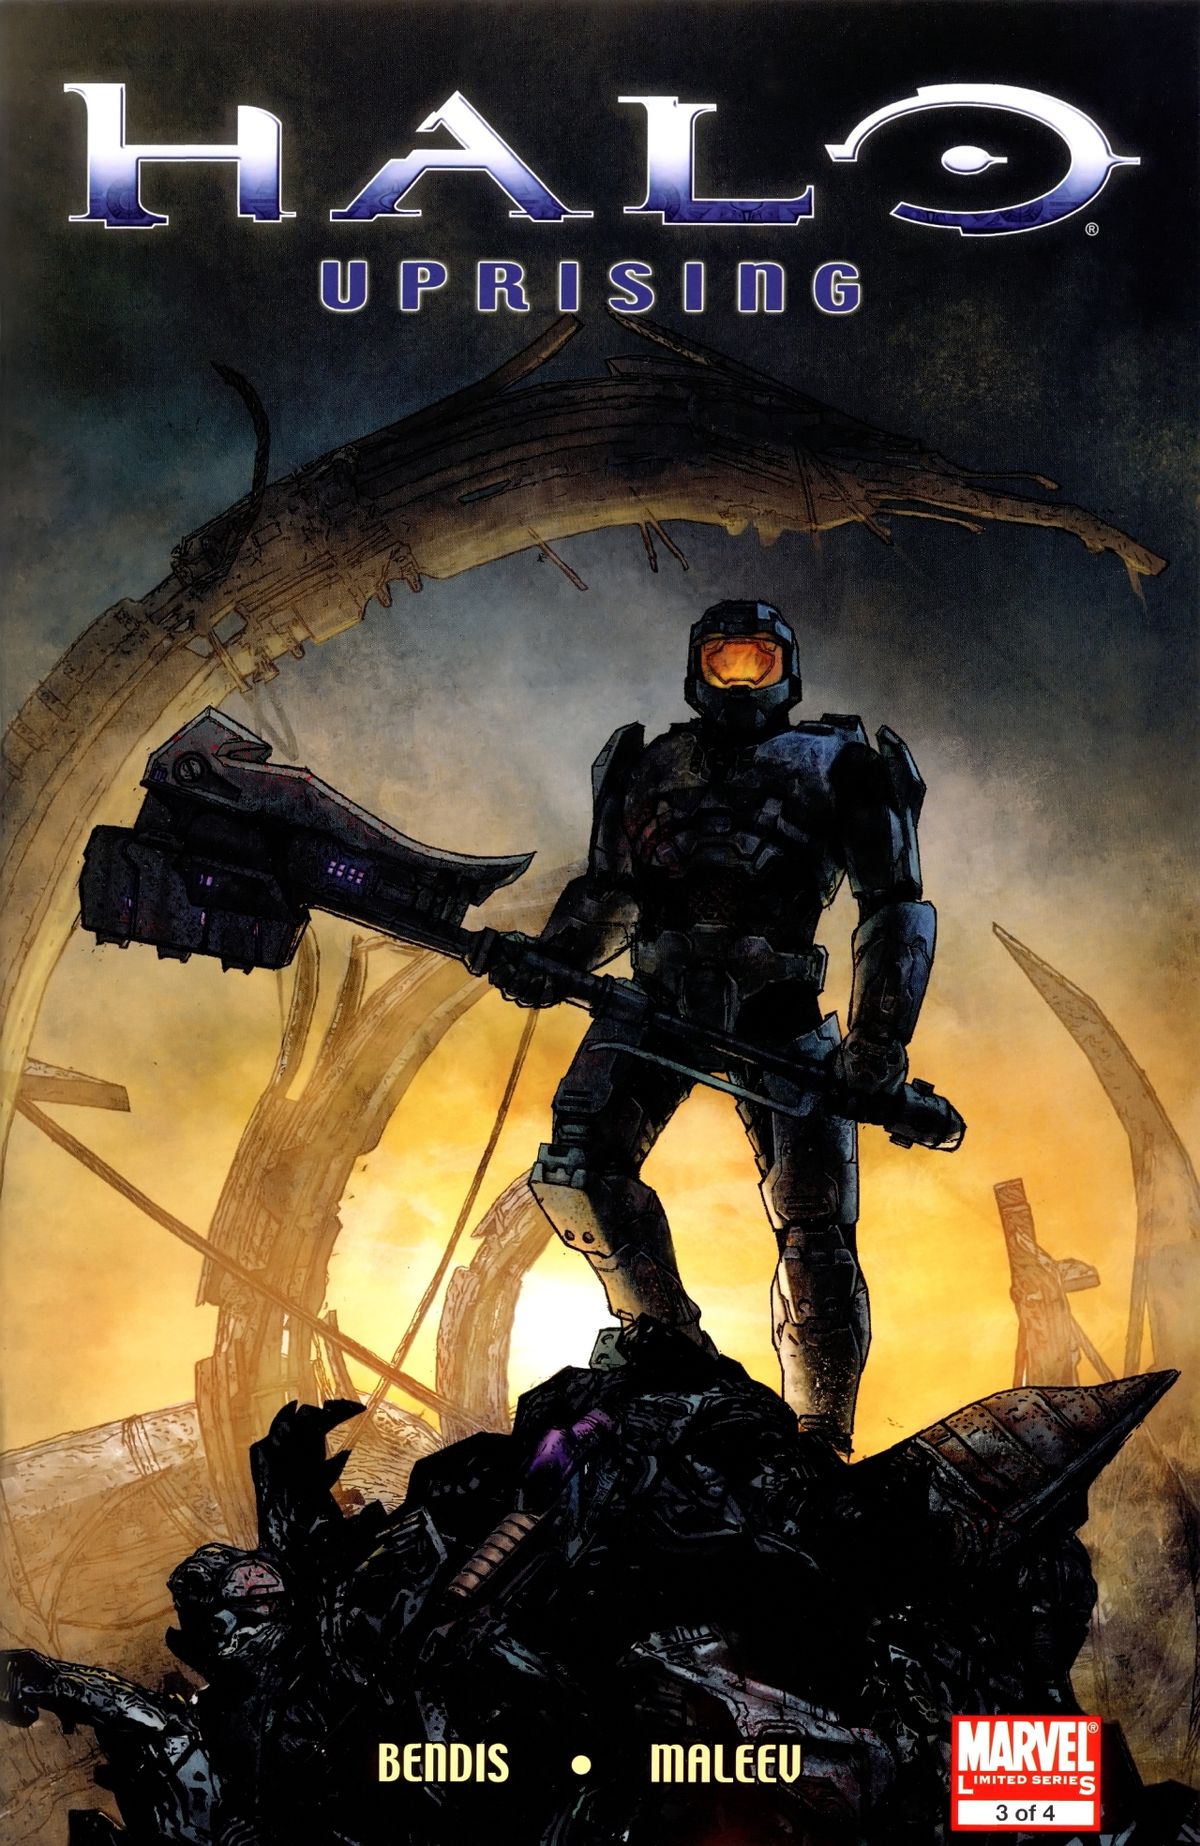 Halo: Uprising Issue 3 - Novel - Halopedia, the Halo wiki